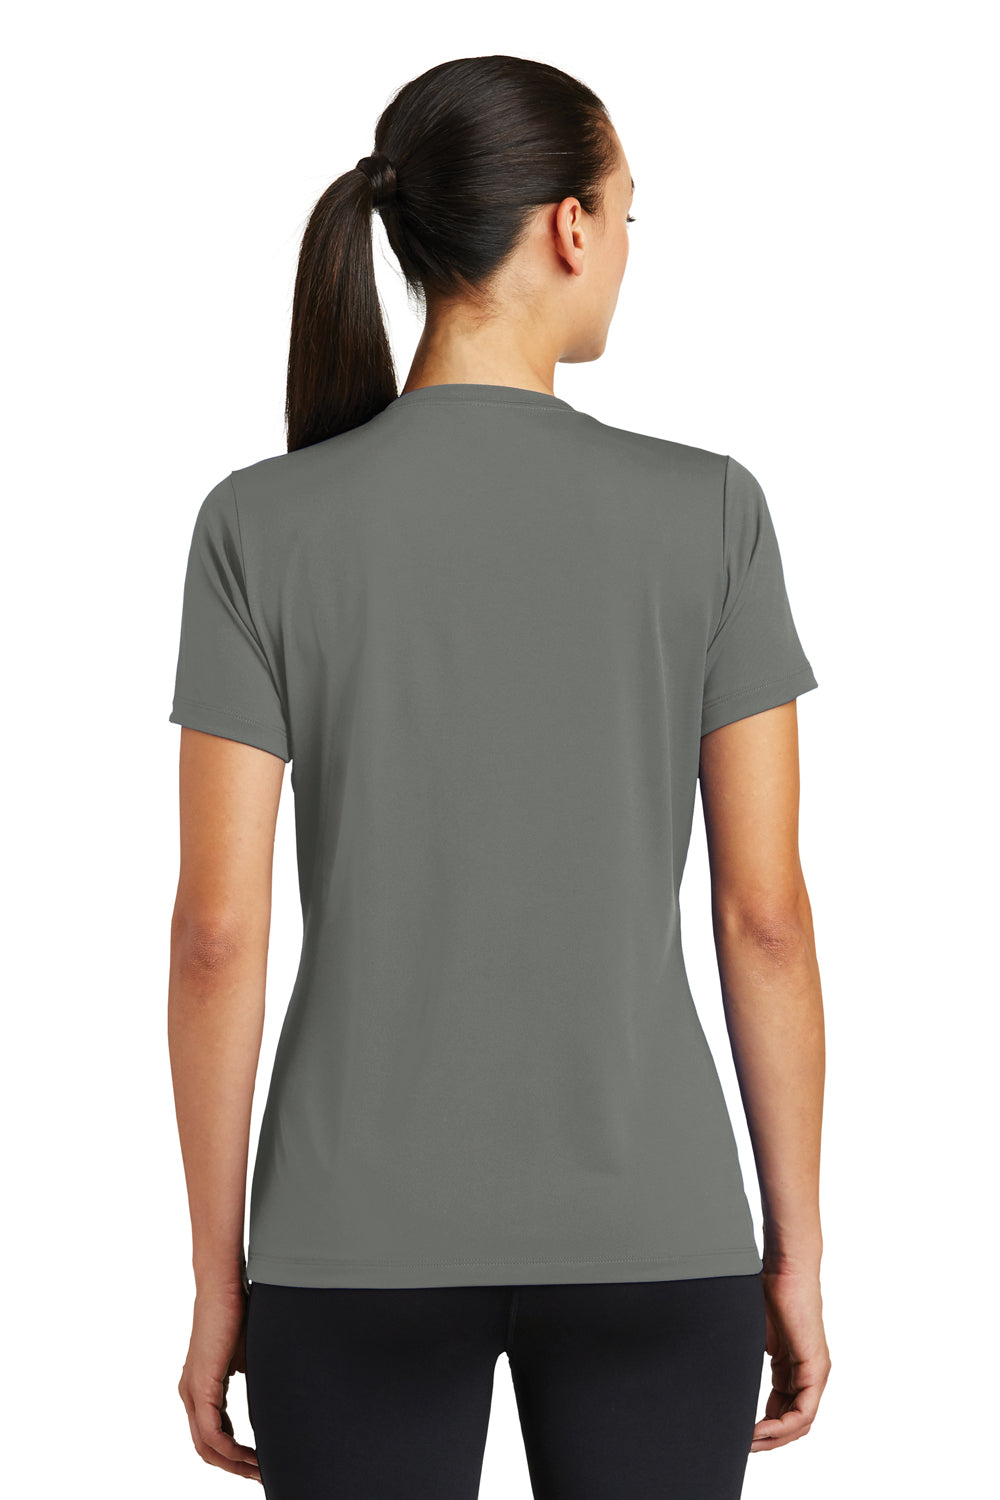 Sport-Tek LST320 Womens Tough Moisture Wicking Short Sleeve Crewneck T-Shirt Dark Grey Back